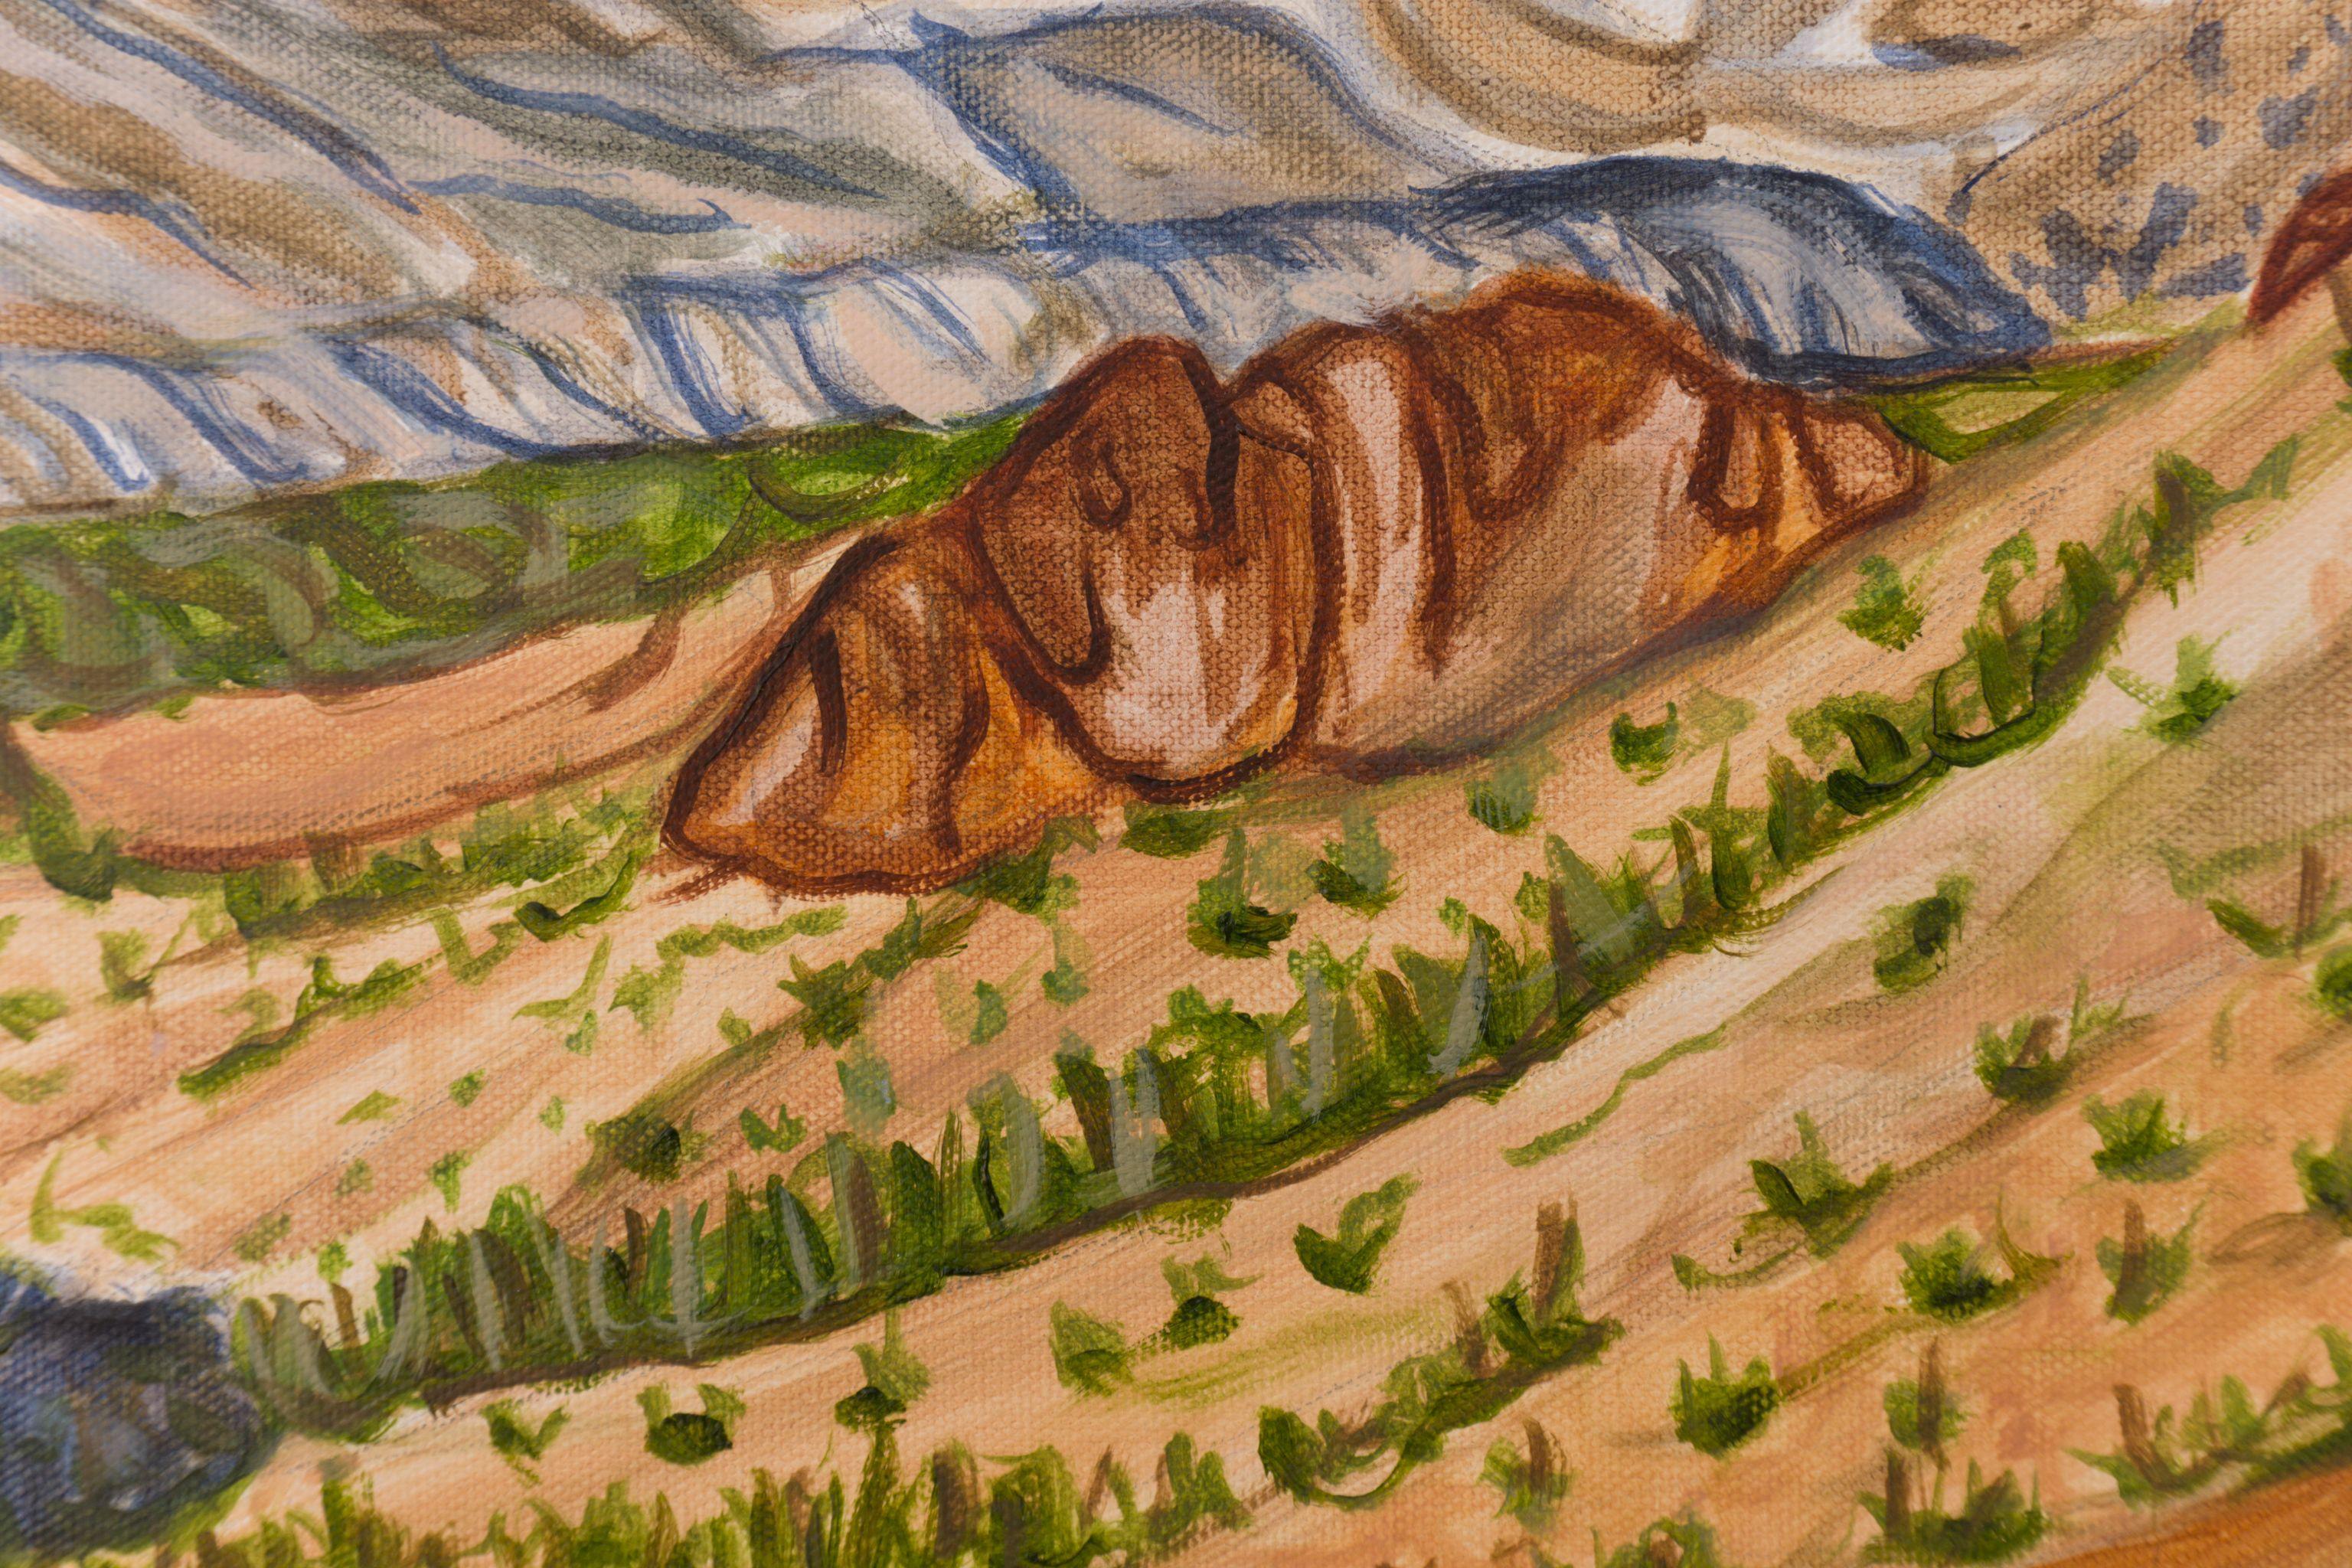 Sentinel du sommet du rocher, peinture à l'huile sur toile - Painting de Crystal DiPietro